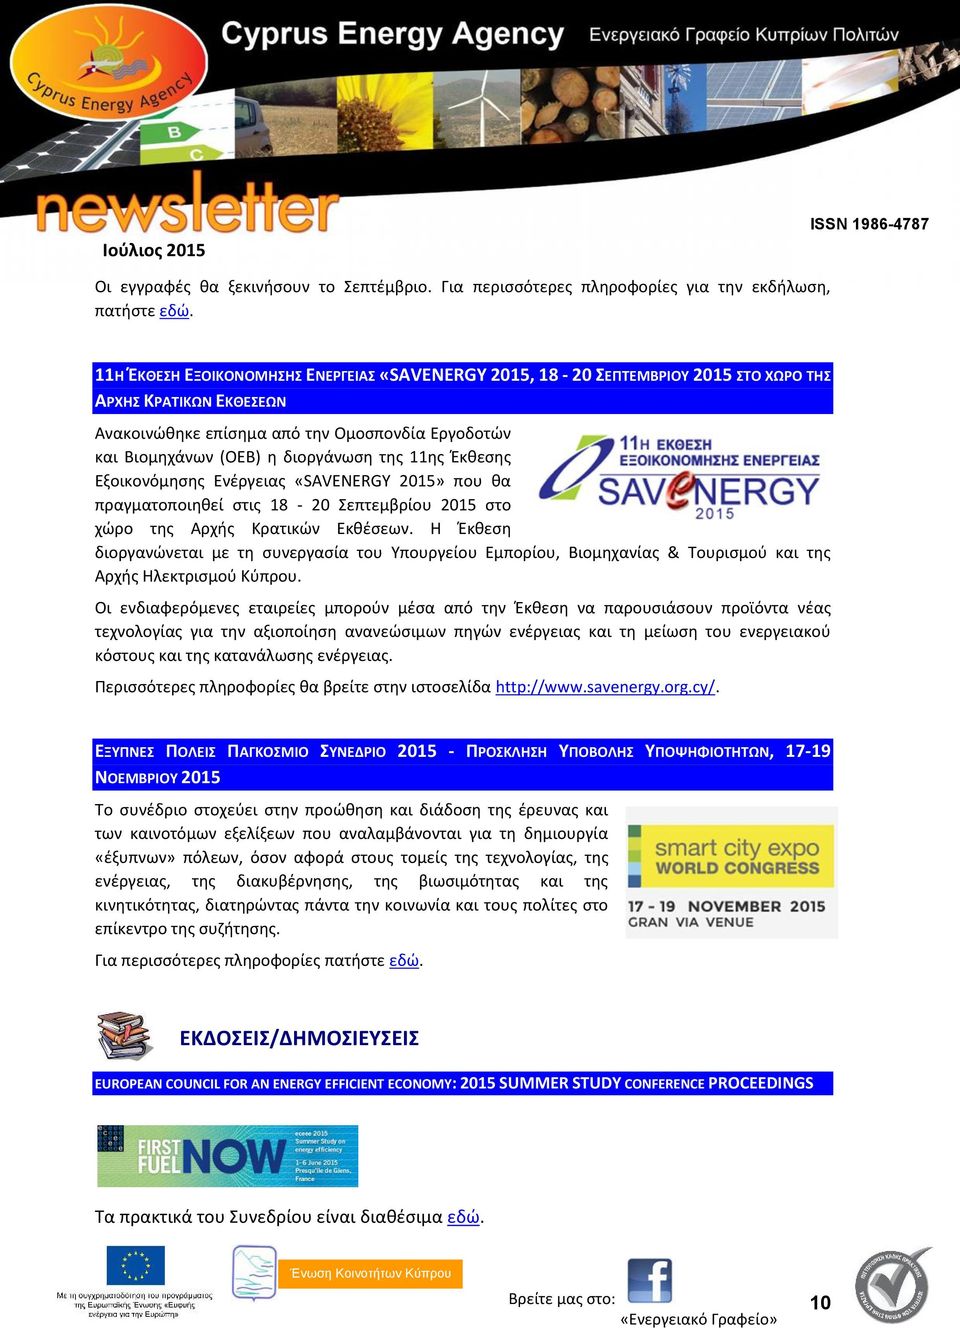 11ης Έκθεσης Εξοικονόμησης Ενέργειας «SAVENERGY 2015» που θα πραγματοποιηθεί στις 18-20 Σεπτεμβρίου 2015 στο χώρο της Αρχής Κρατικών Εκθέσεων.